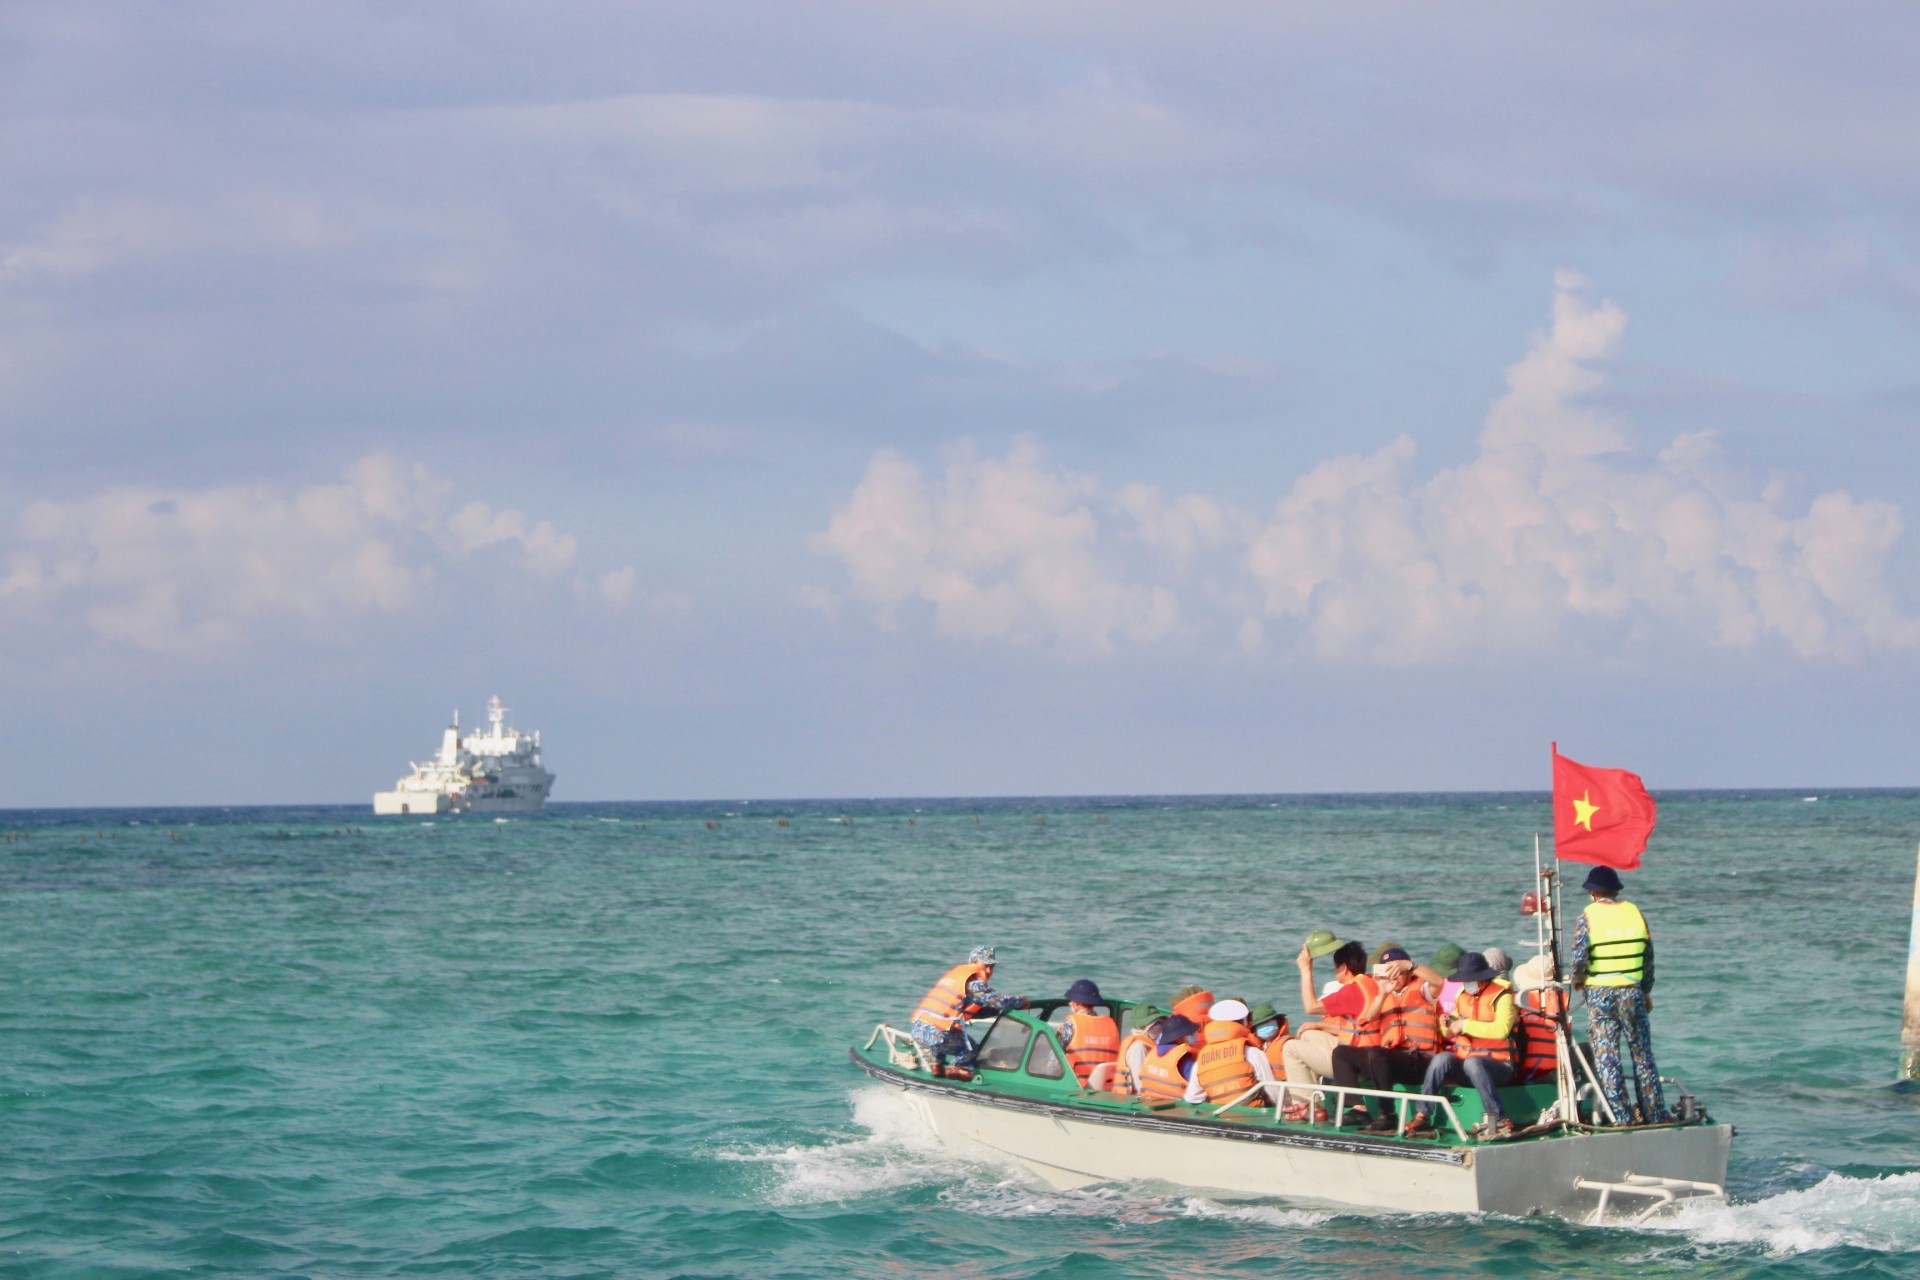 Cano đưa đoàn đại biểu về tàu Trường Sa 571, kết thúc hải trình 10 ngày đến thăm cán bộ, quân, dân ở các điểm đảo huyện Trường Sa